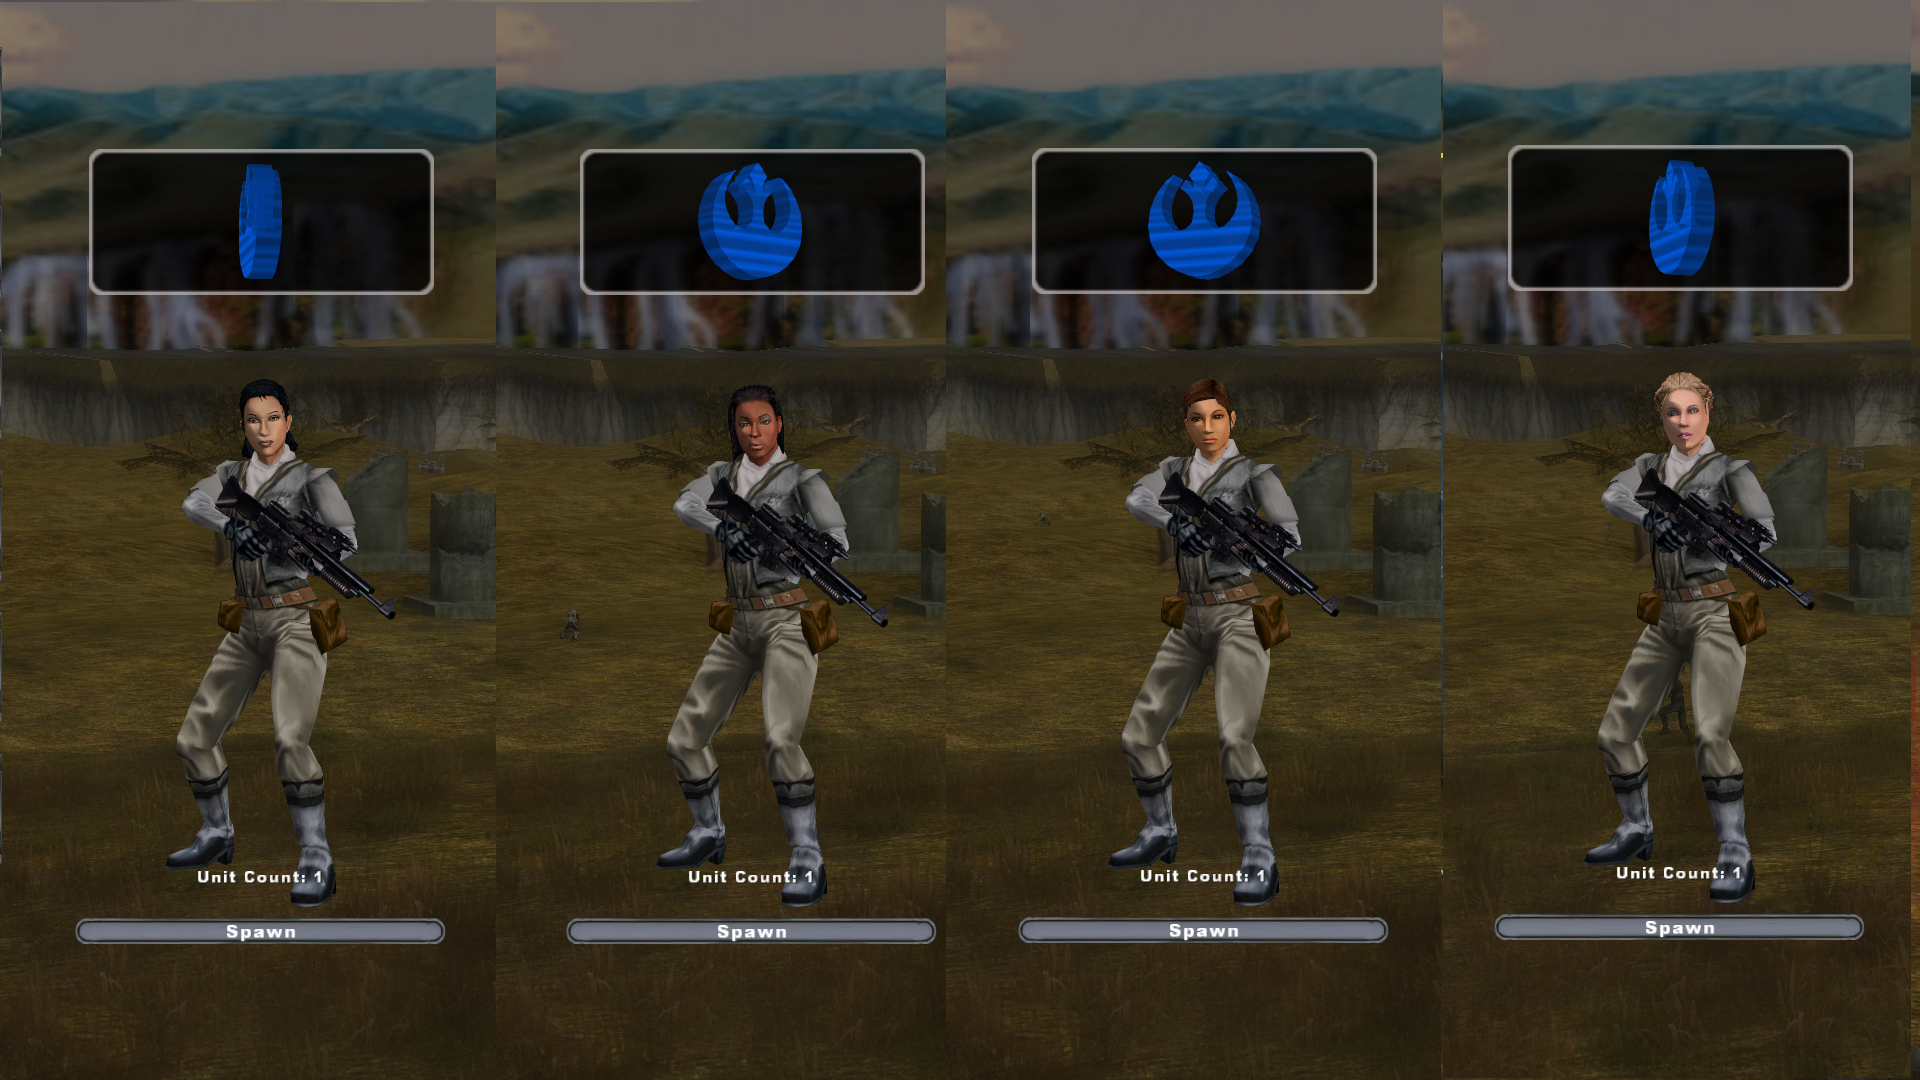 Demo Test 2 video - Star Wars Battlefront 2 Legends mod for Star Wars  Battlefront II - Mod DB